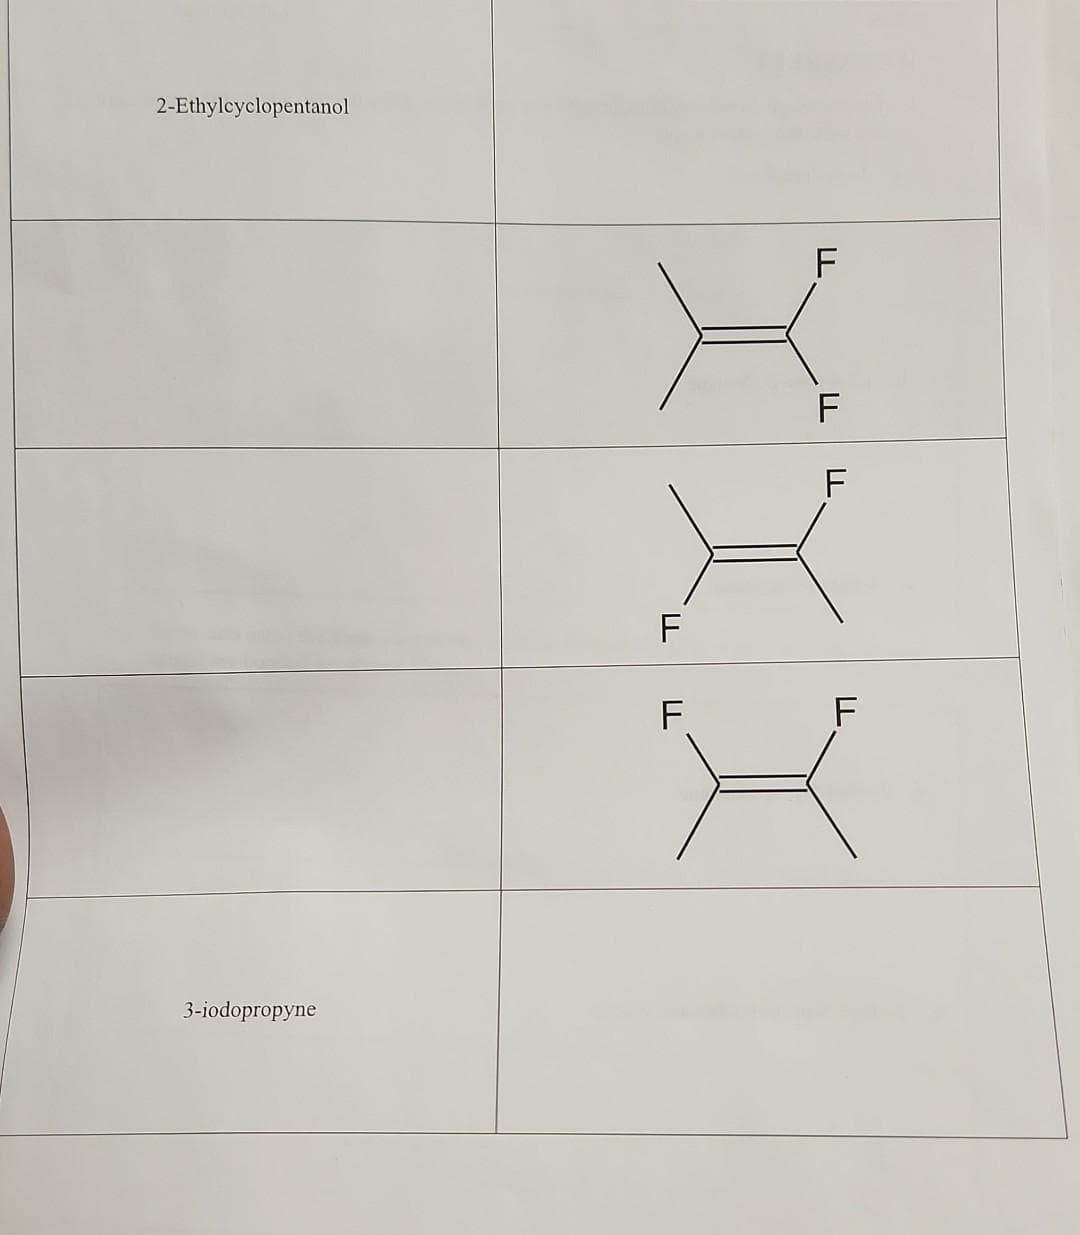 2-Ethylcyclopentanol
3-iodopropyne
F
LL
F
F
F
F
F